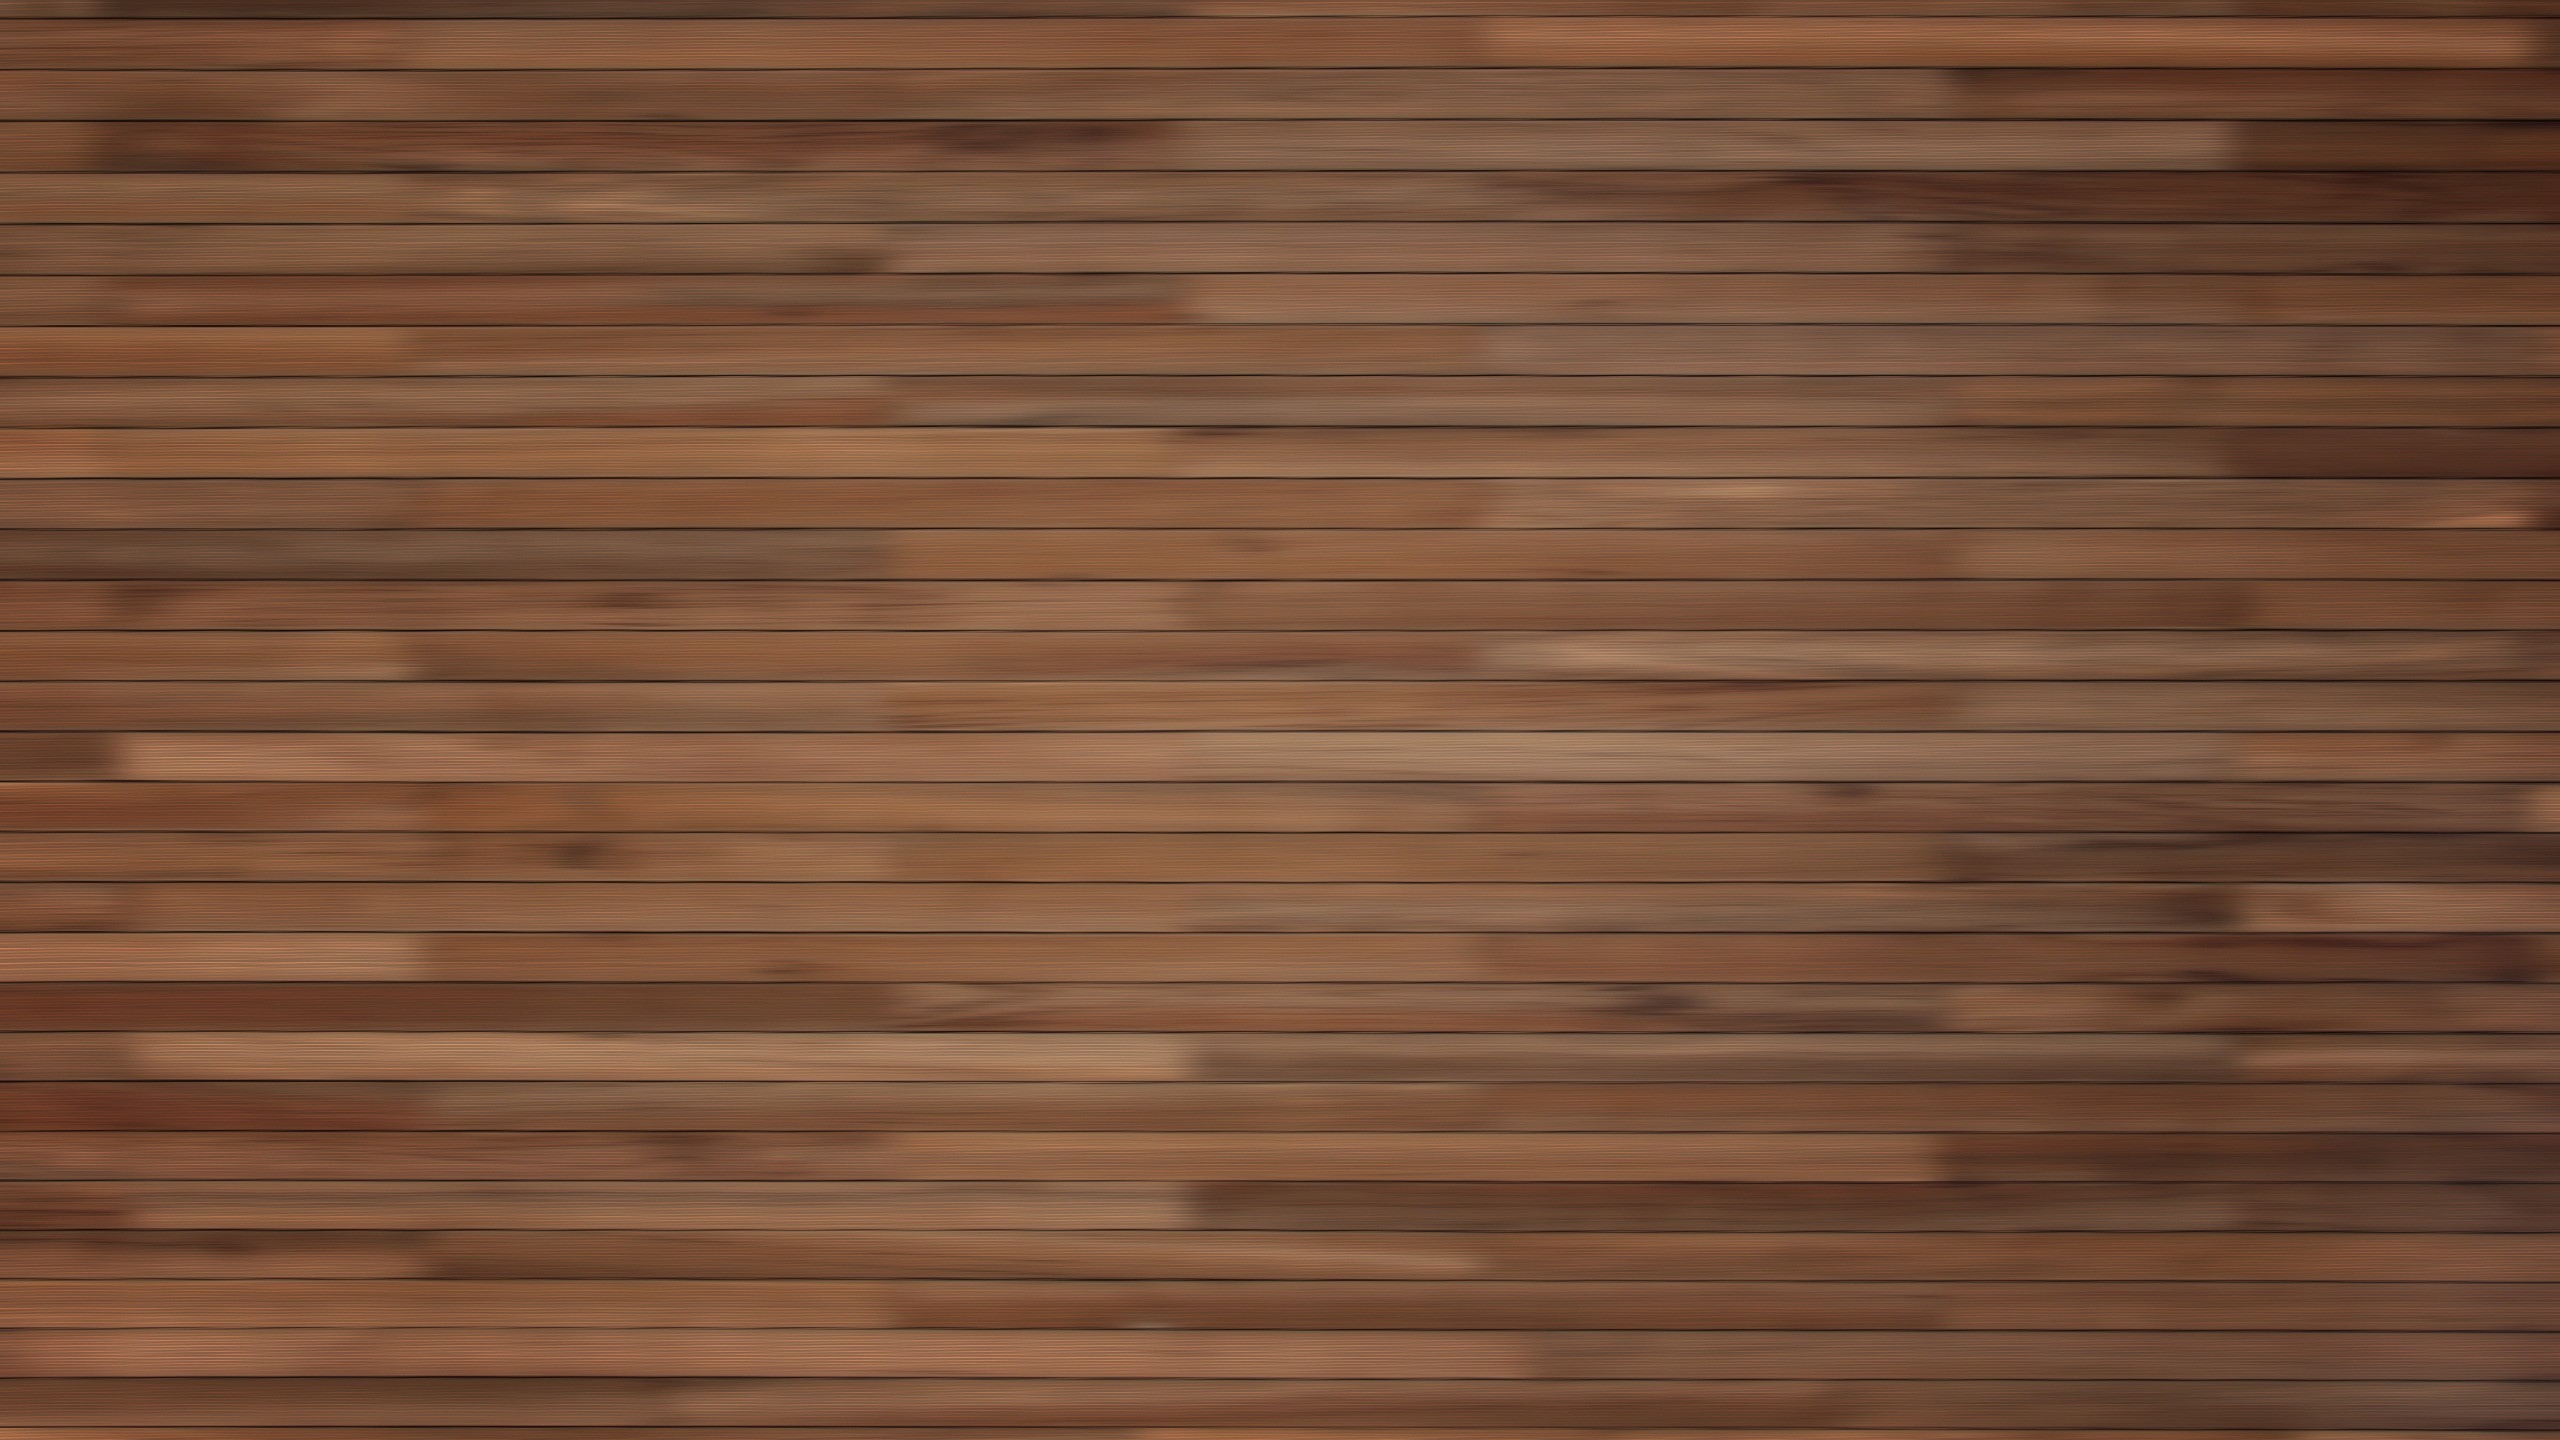 Sự thăng hoa của màu sắc trên nền gạch vân gỗ sáng sẽ làm cho bất kỳ không gian nào cũng trở nên năng động và sảng khoái. Với gạch vân gỗ sáng, bạn sẽ có một khu vực sống động và khác biệt trong nhà của bạn.